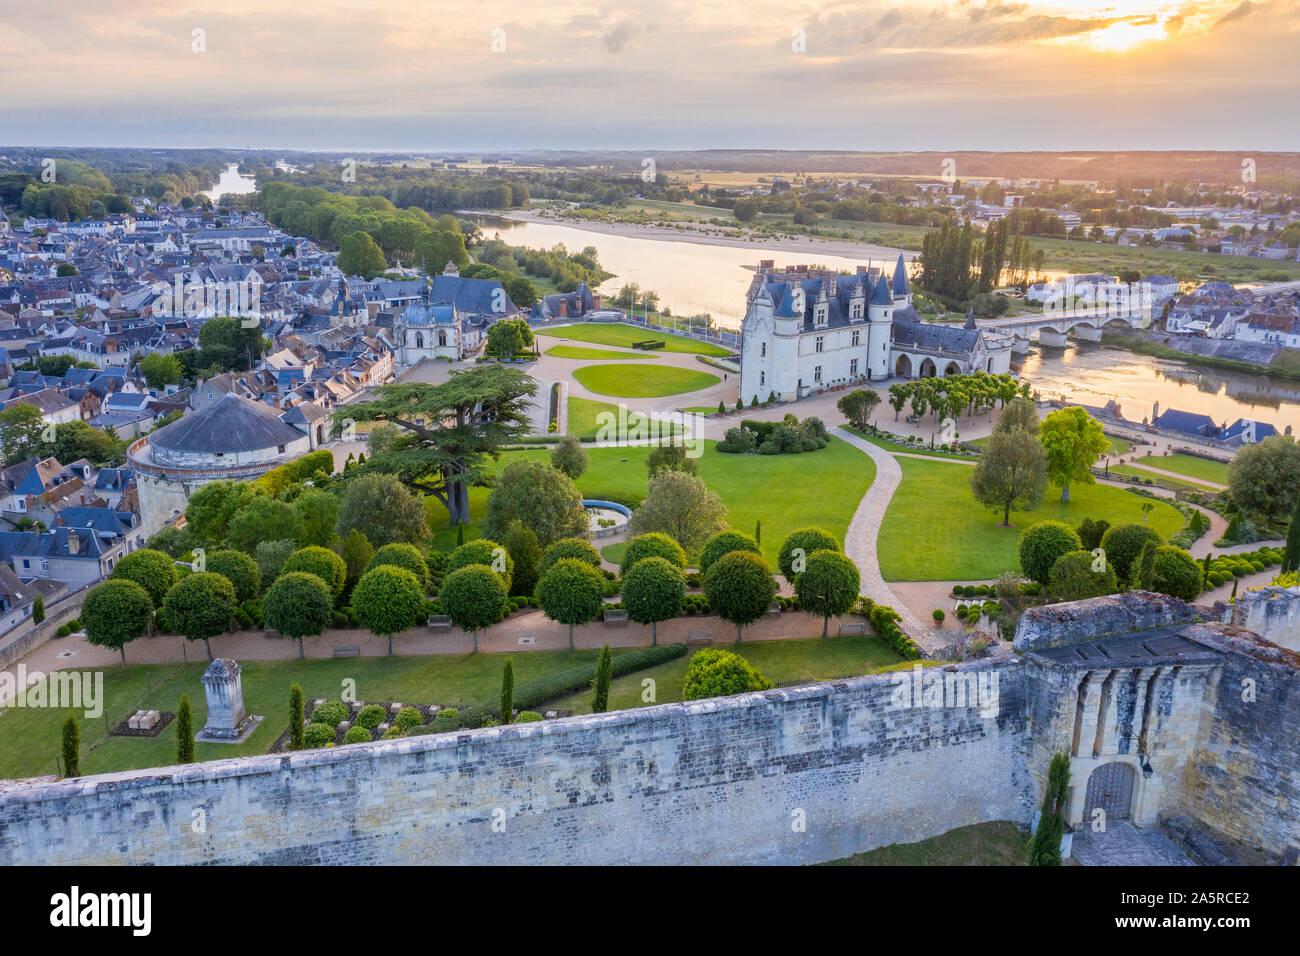 France, Indre et Loire, Vallée de la Loire classée au Patrimoine Mondial de l'UNESCO, Amboise, Château royal d'Amboise, les jardins du soir (vue aérienne) Banque D'Images